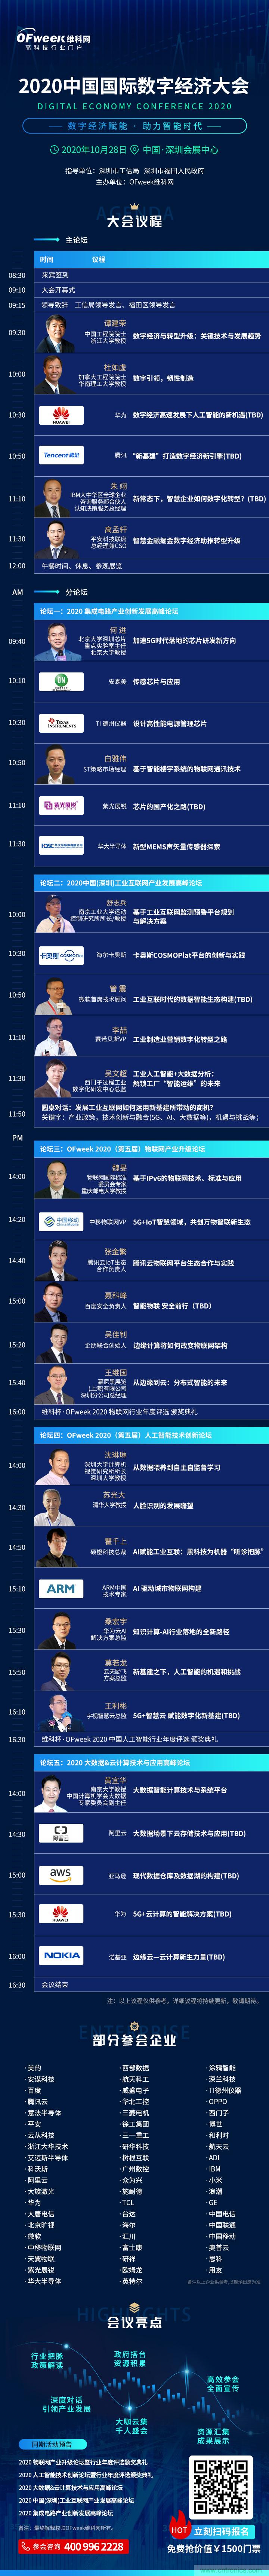 中国工程院院士谭建荣将出席2020中国国际数字经济大会